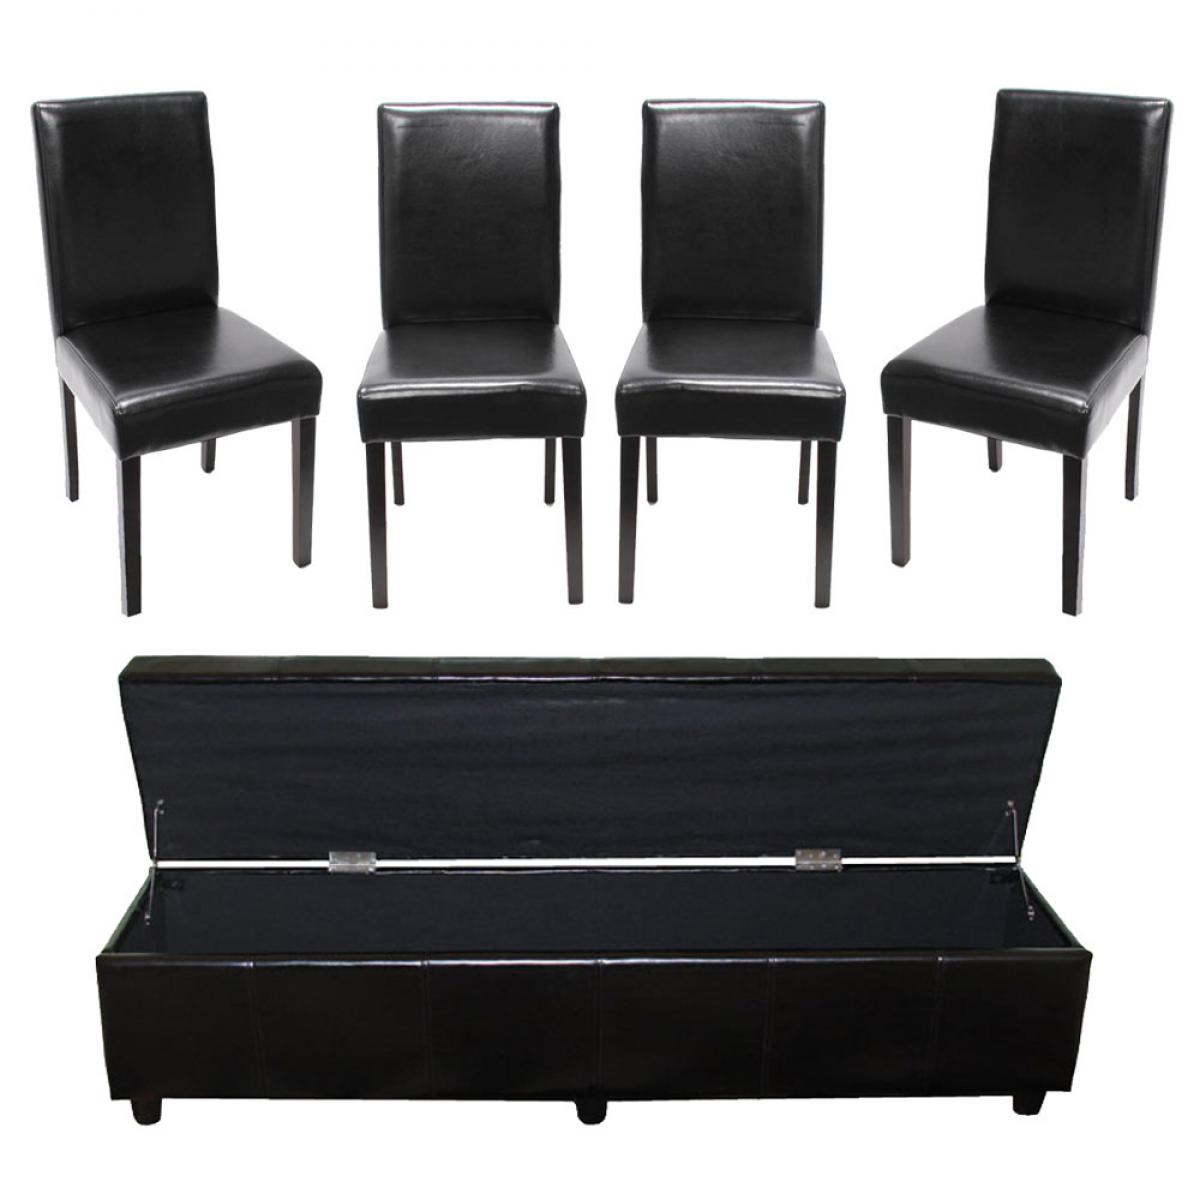 Mendler - Ensemble banc Kriens XXL + 4 chaises Littau, cuir reconstitué, noir - Chaises